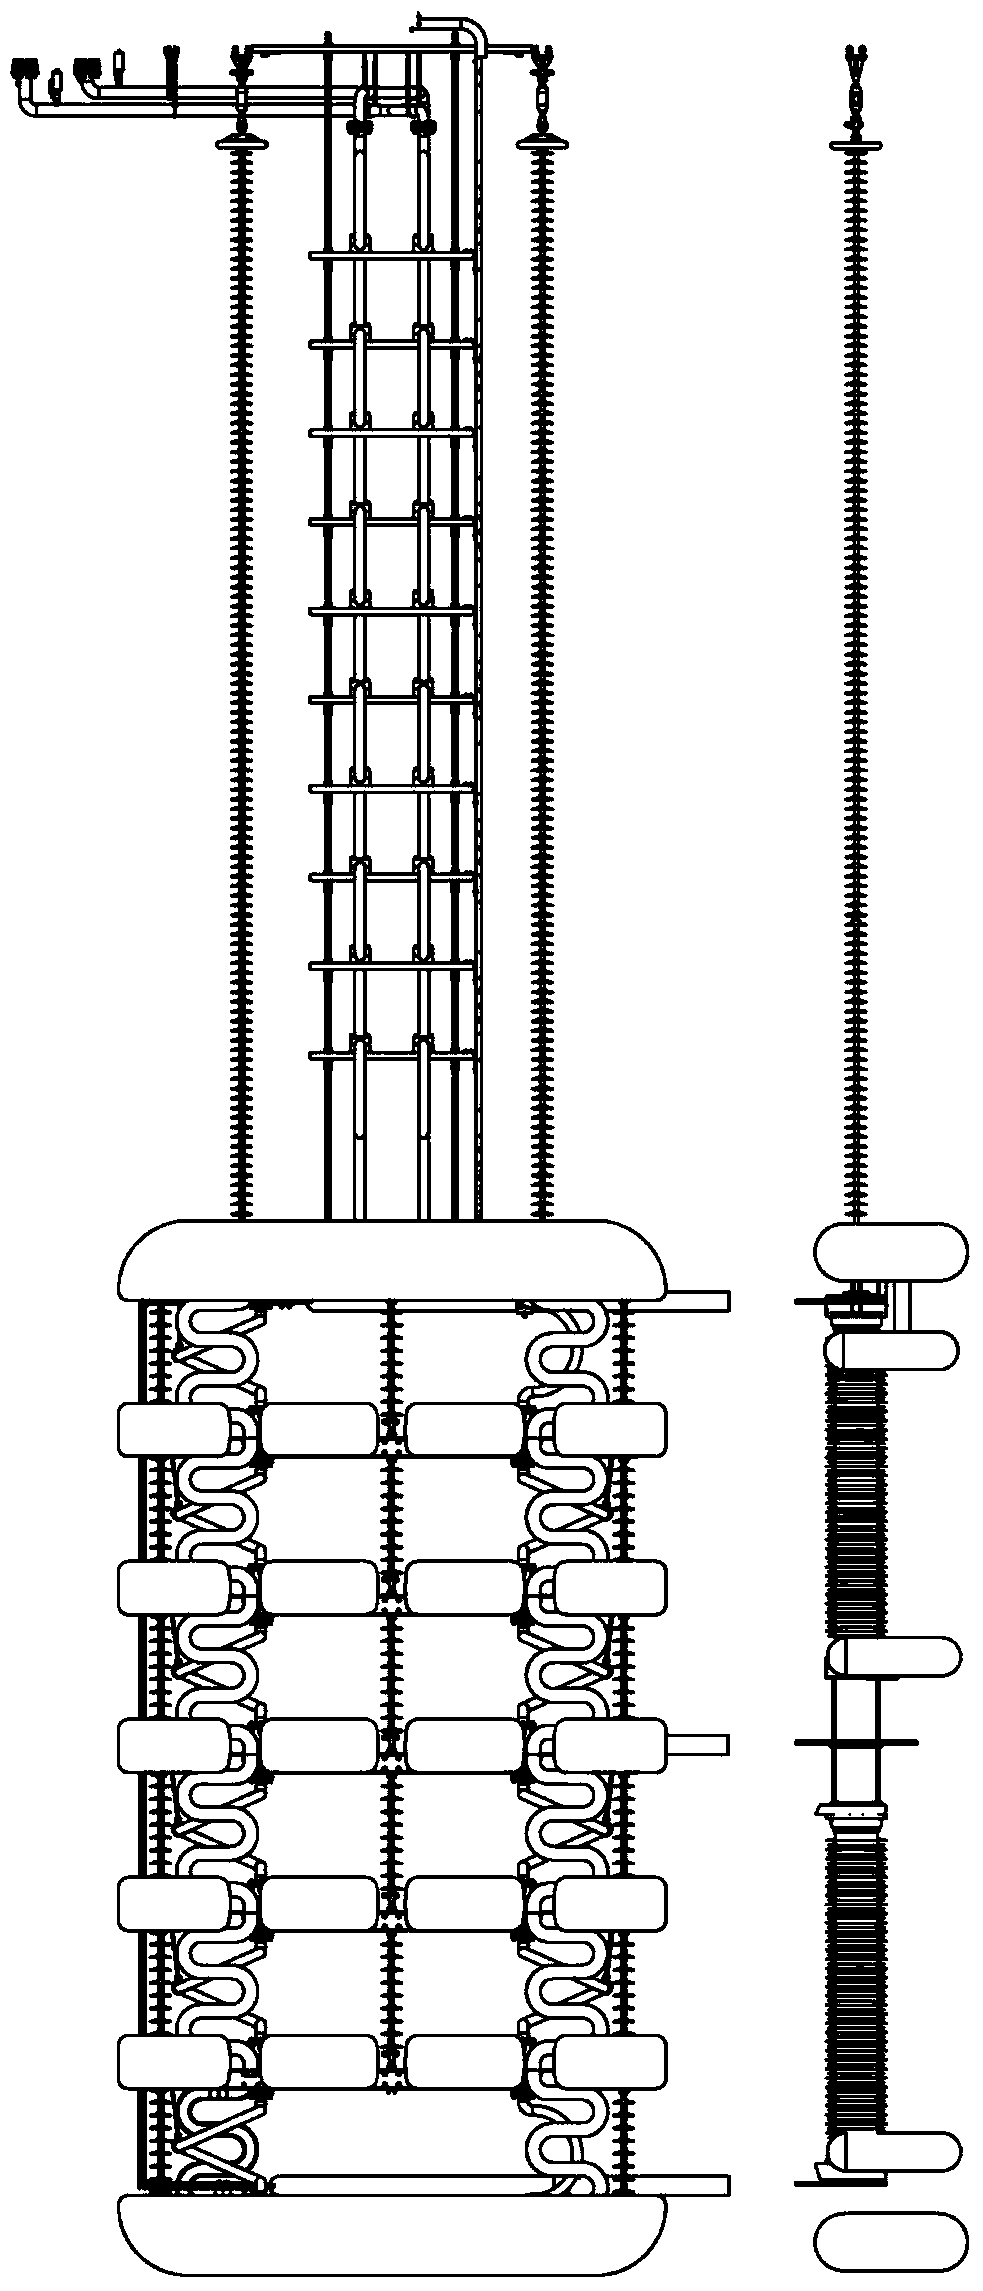 Novel valve tower of thyristor converter valve